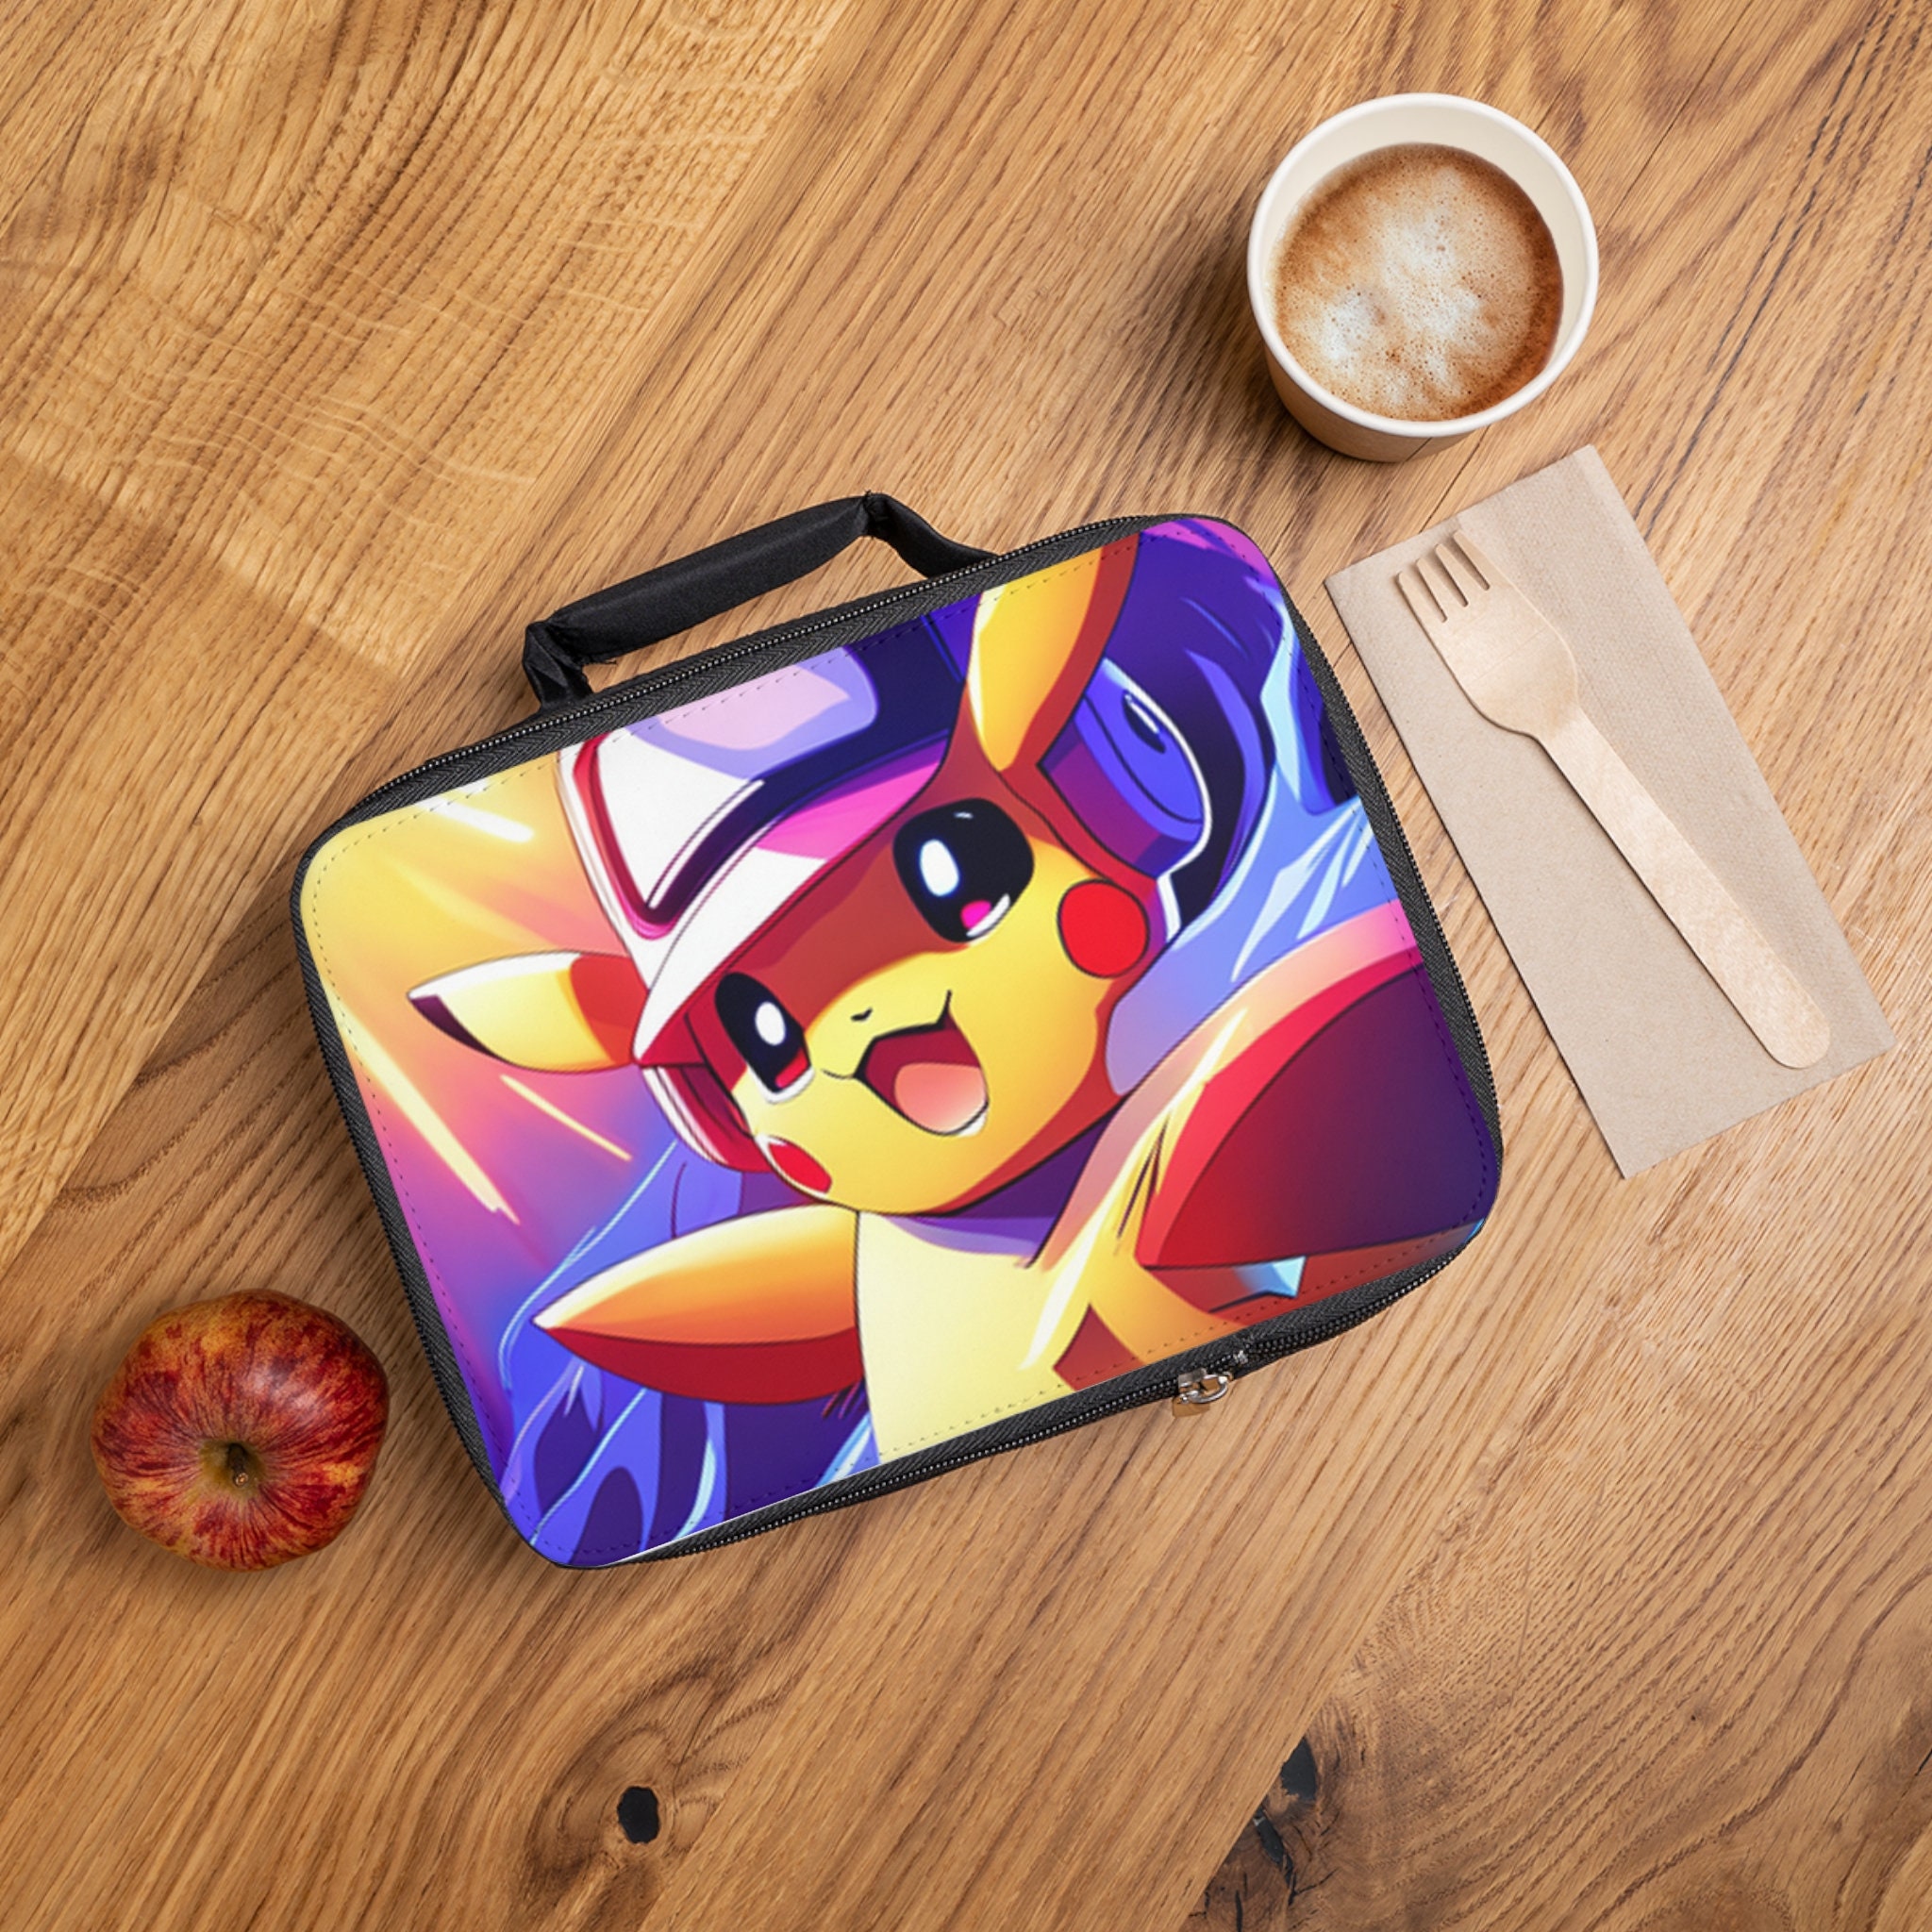 Boîte à lunch Pokémon (divisée) - Pikachu et ses amis